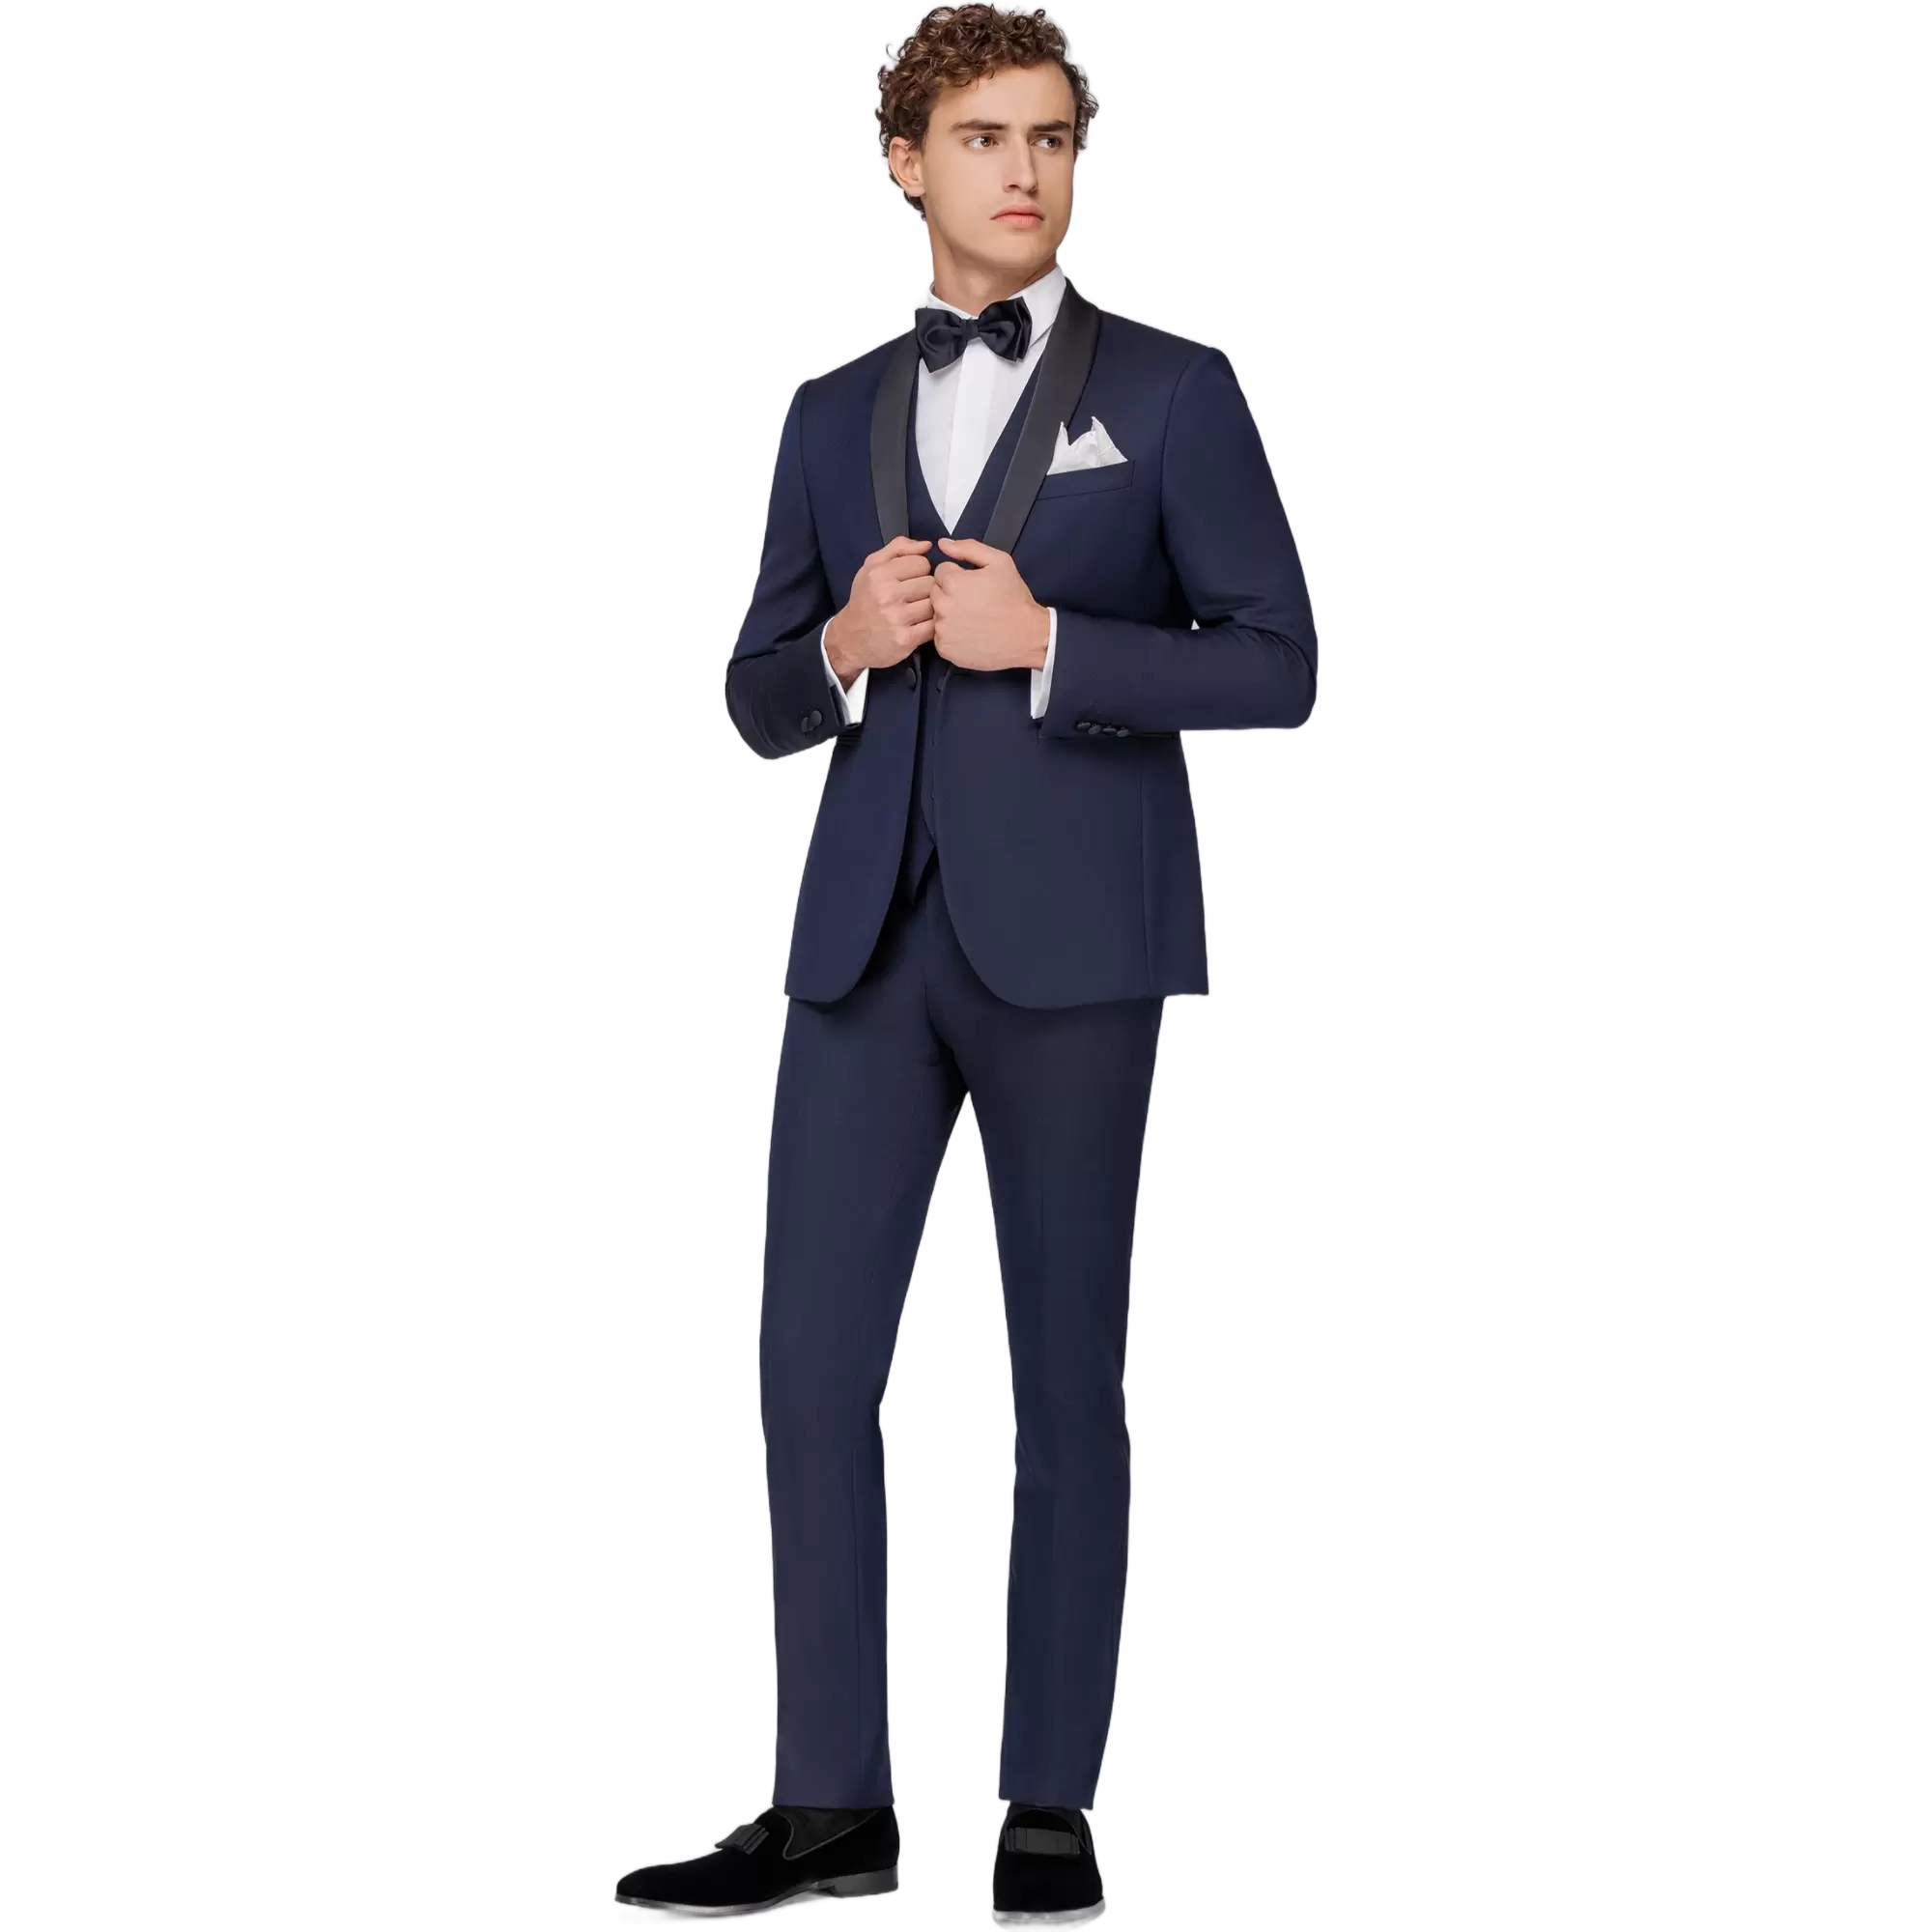 Ανδρικό Κοστούμι Σμόκιν Με Γιλέκο Μπλε Tailor Italian Wear